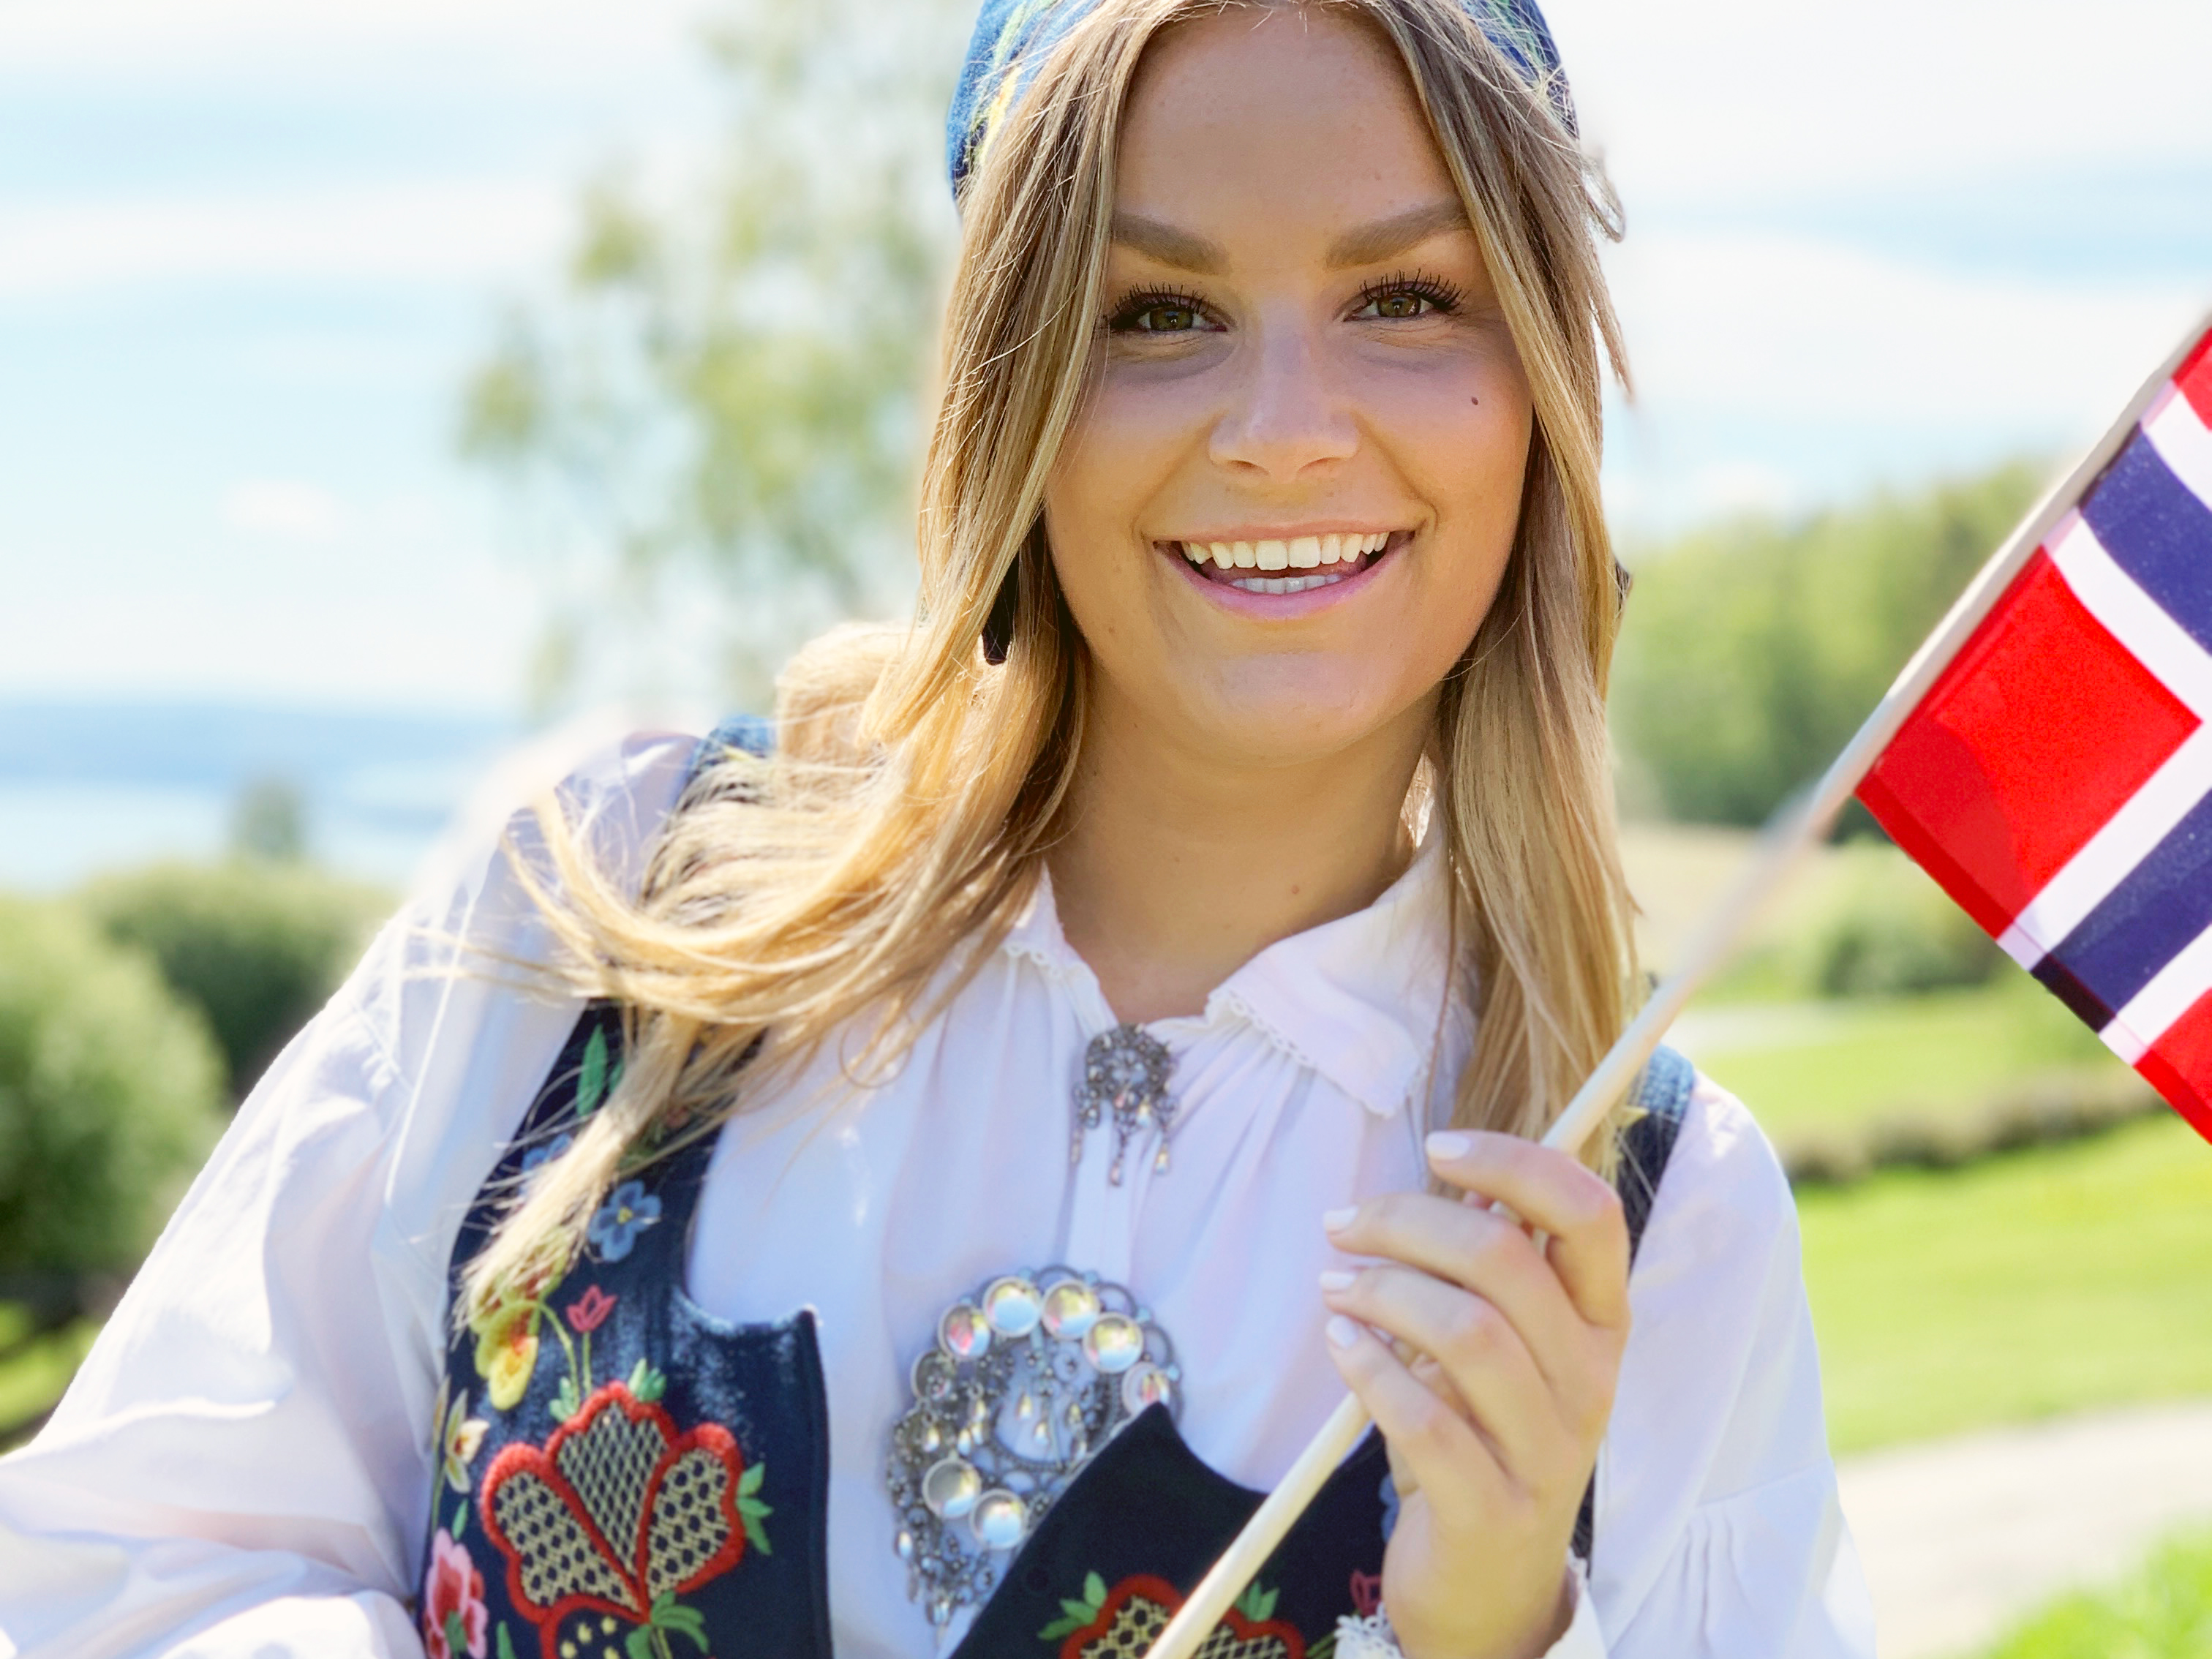 Kvinne med langt hår i bunad holder det norske flagget og smiler.